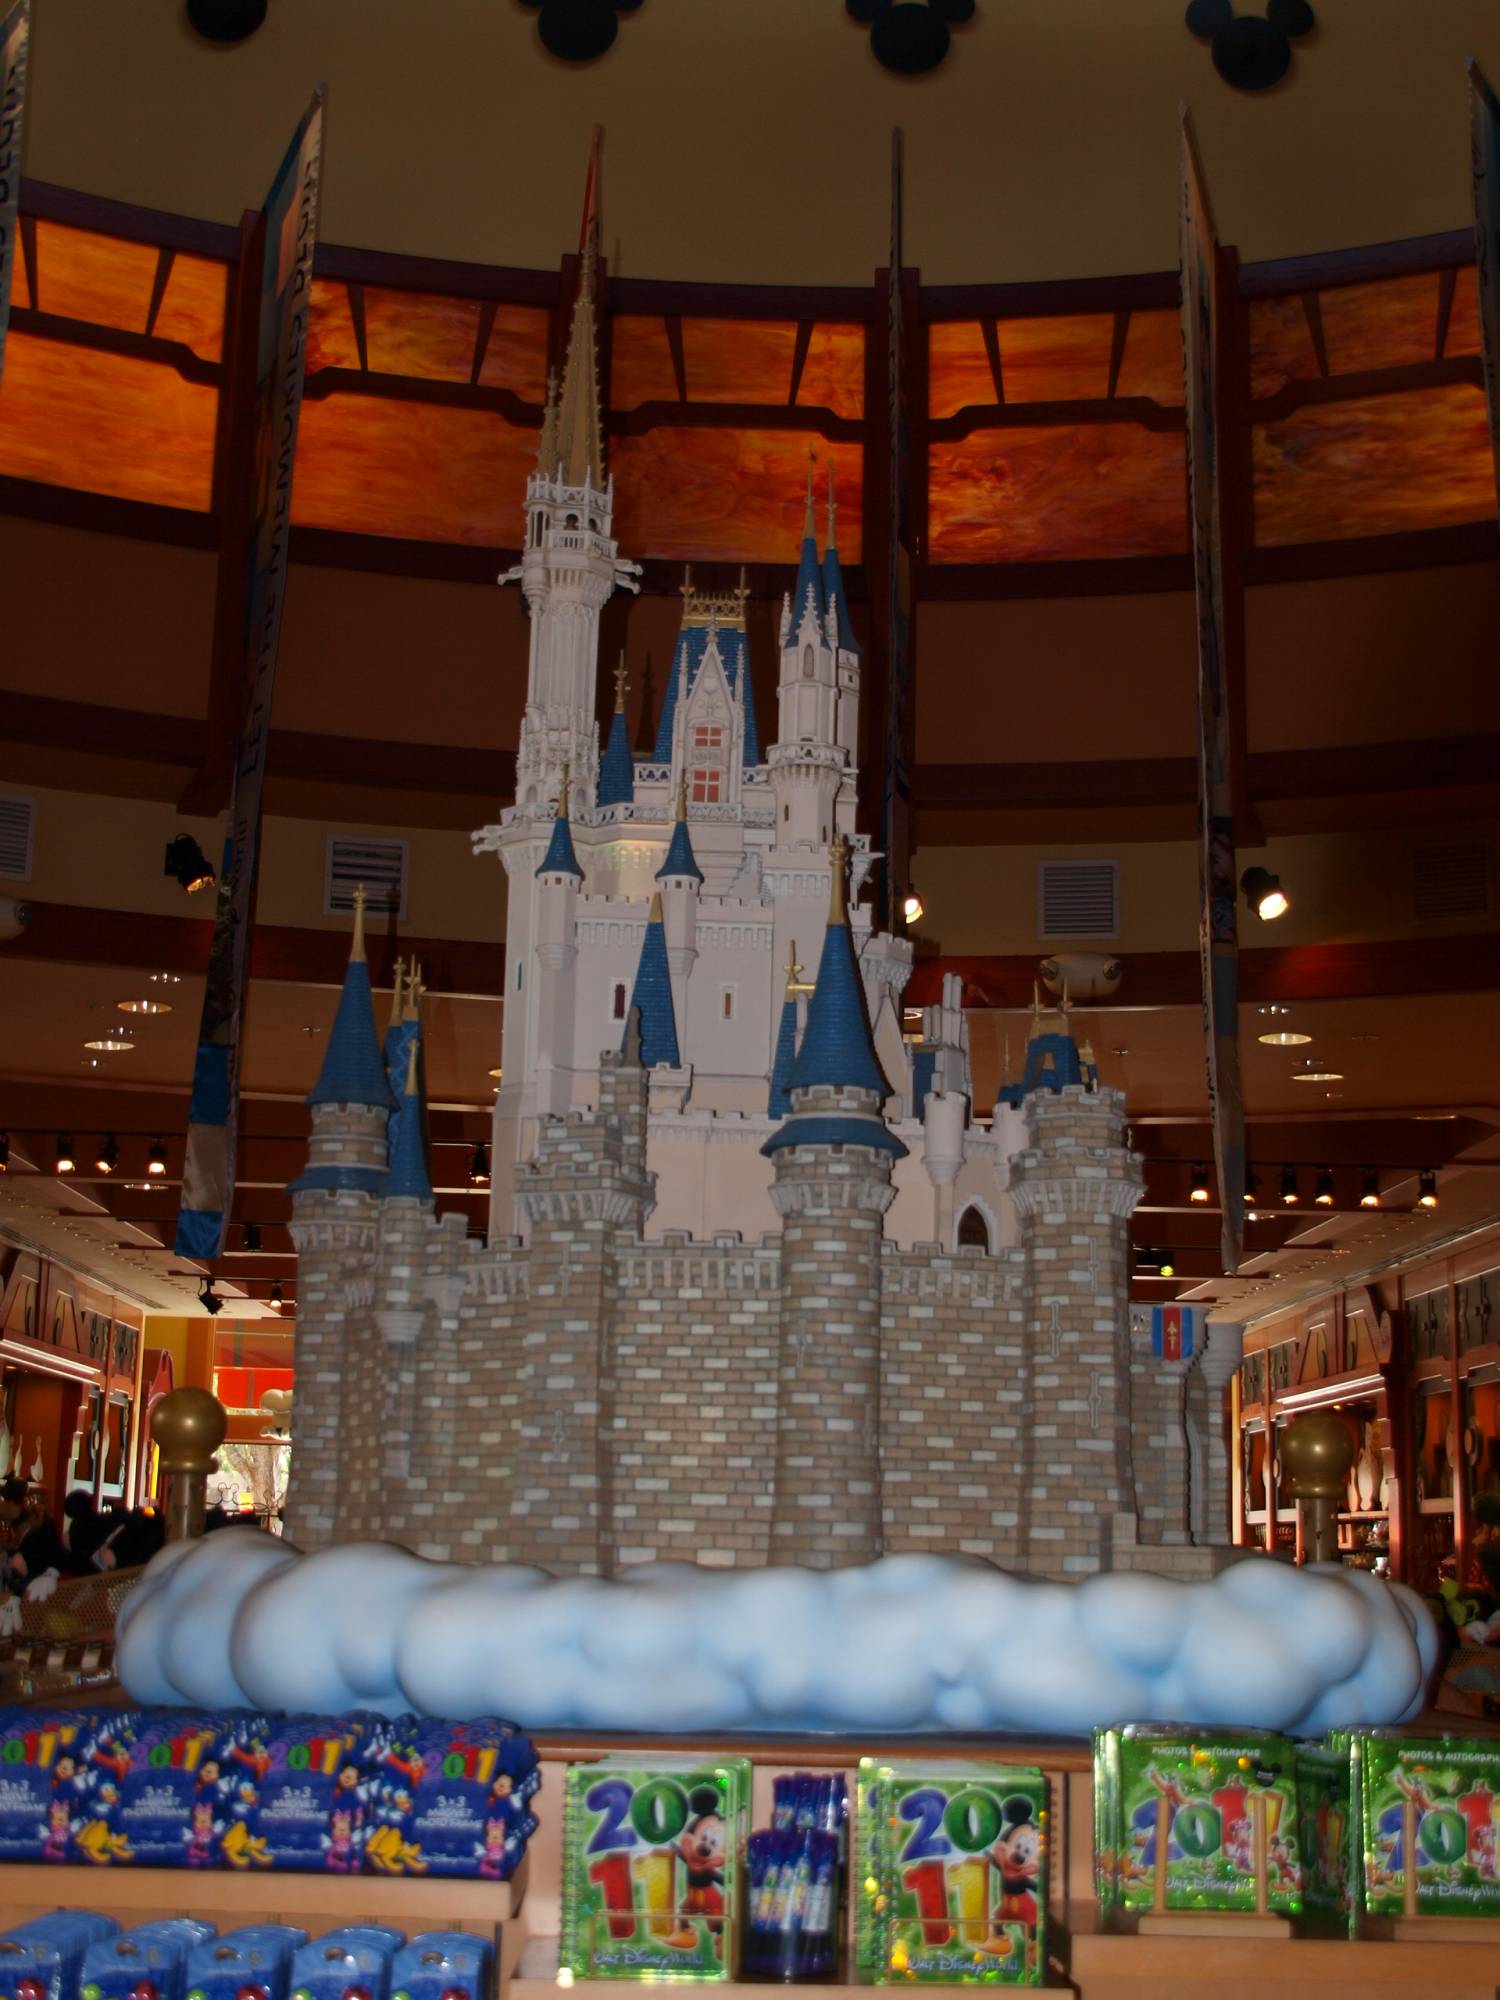 Castle in World of Disney